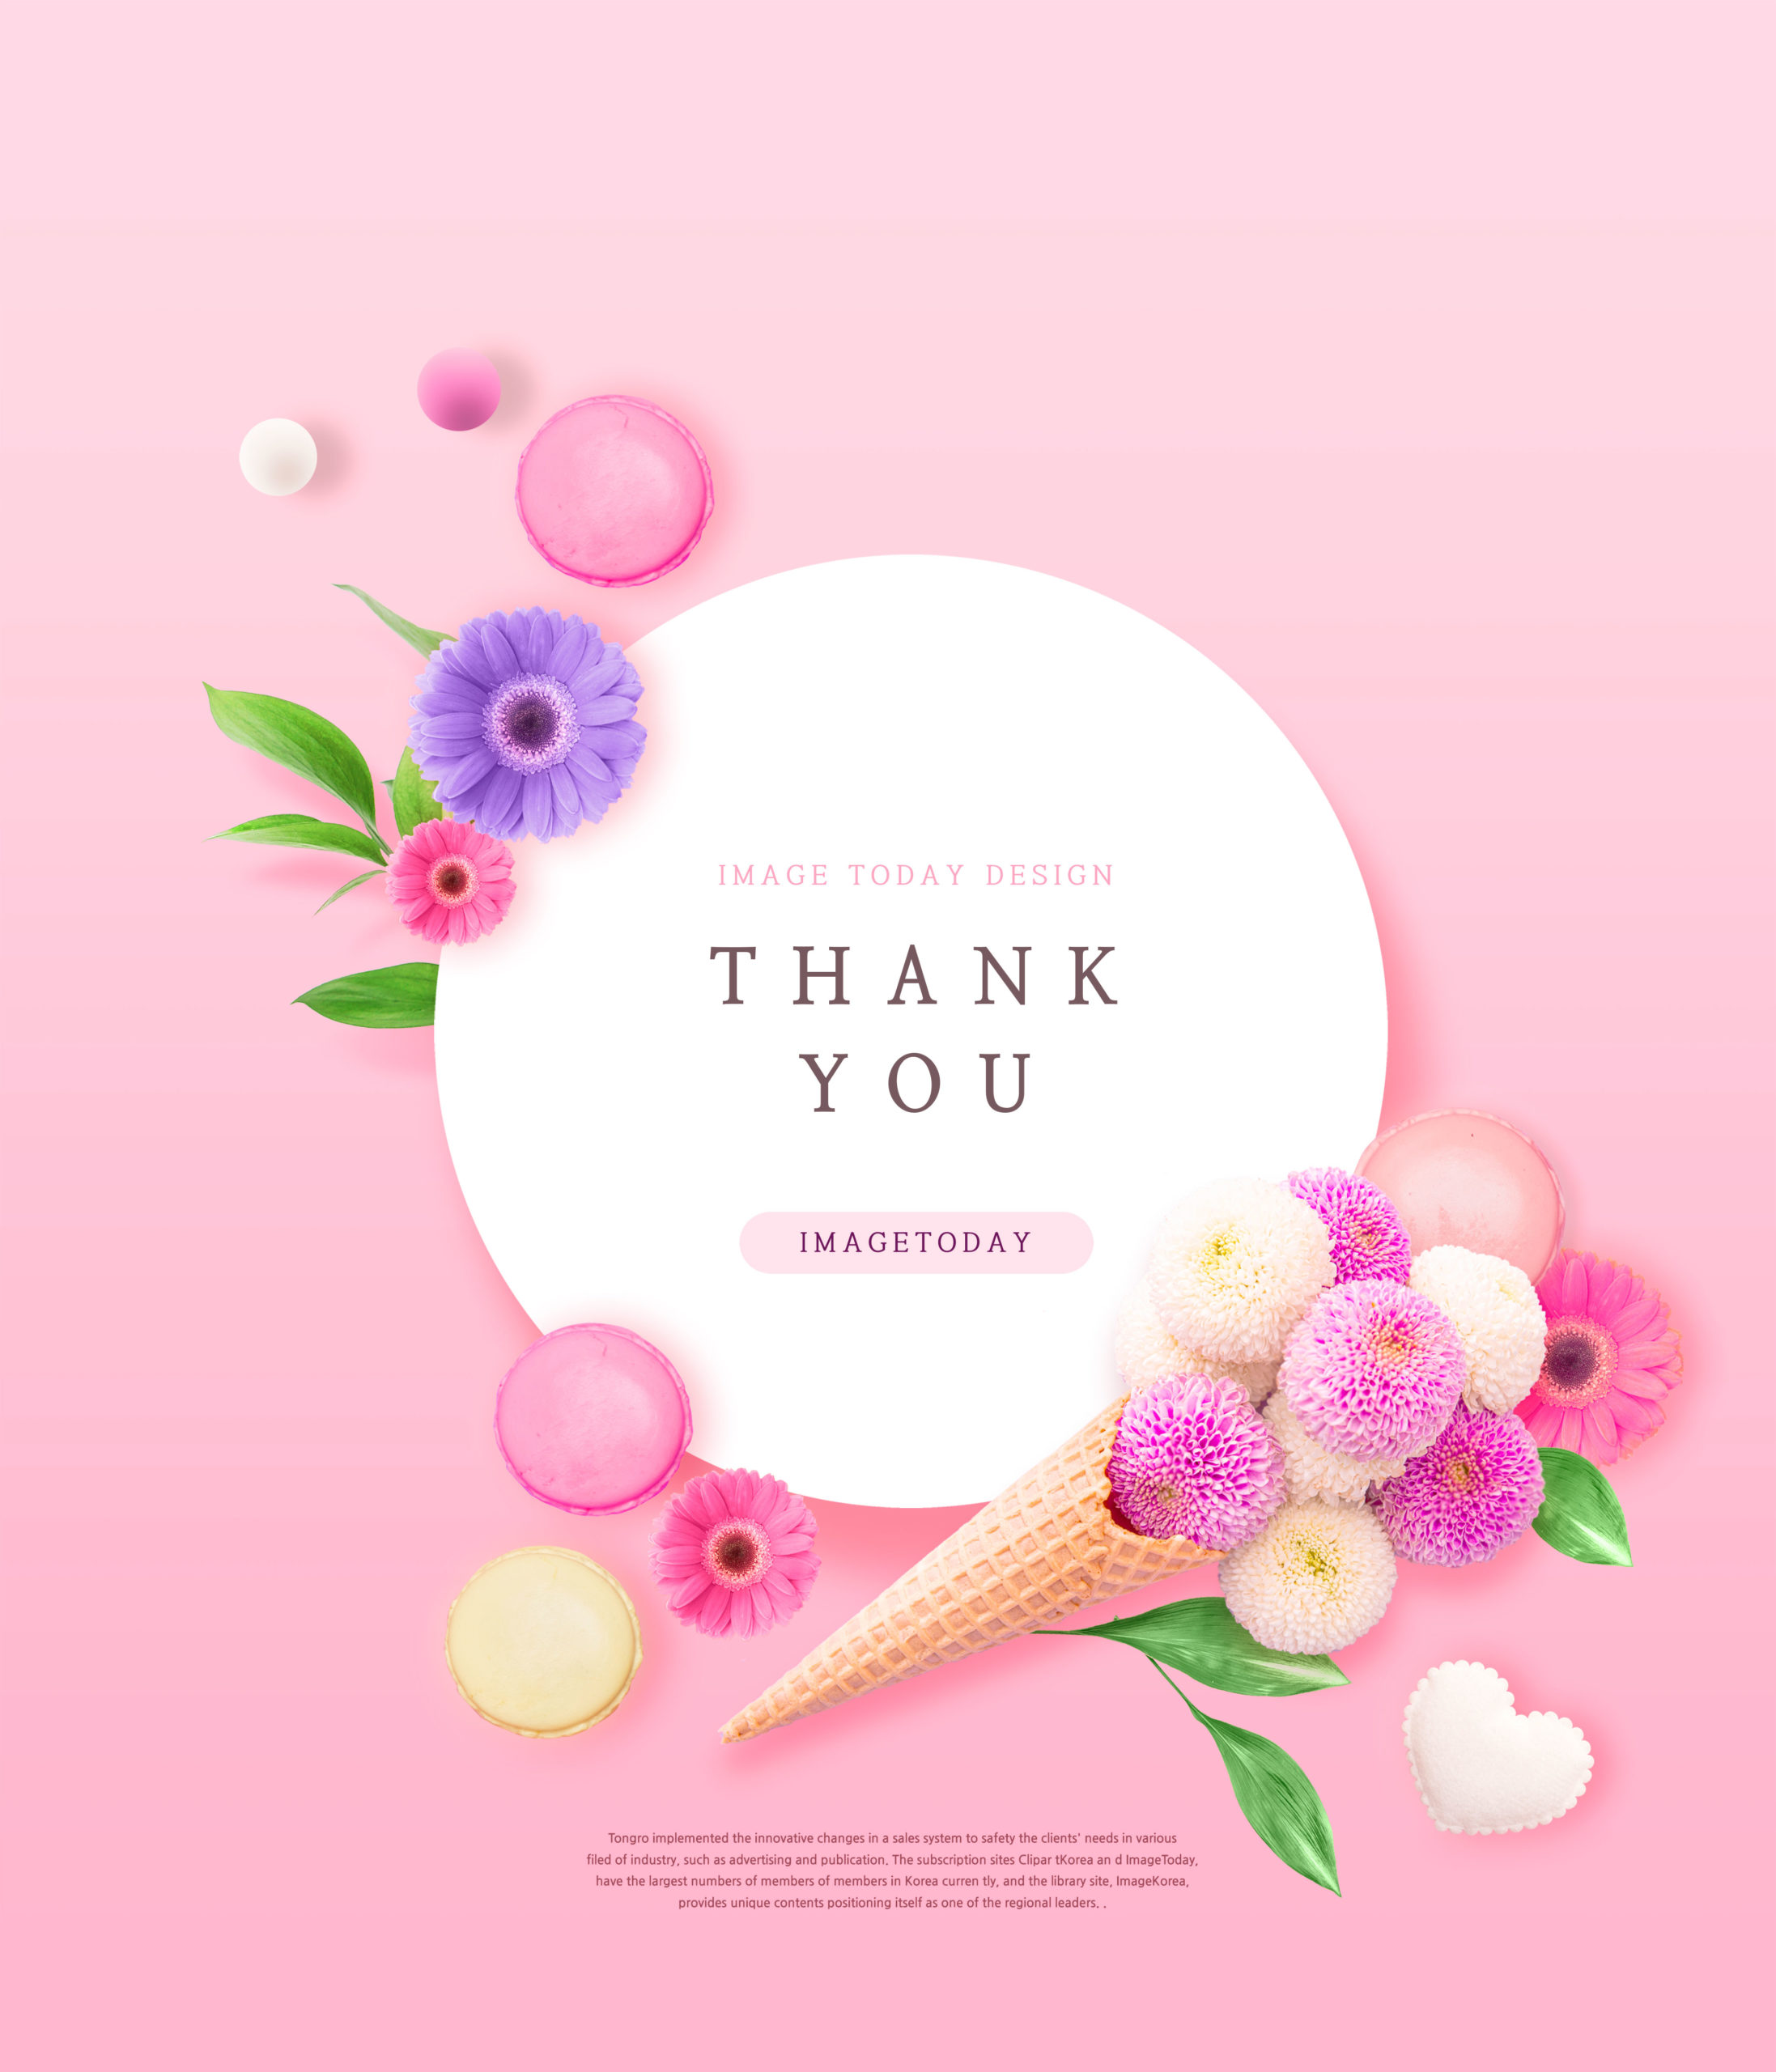 粉色主题三八女神节贺卡/海报PSD素材素材库精选模板插图